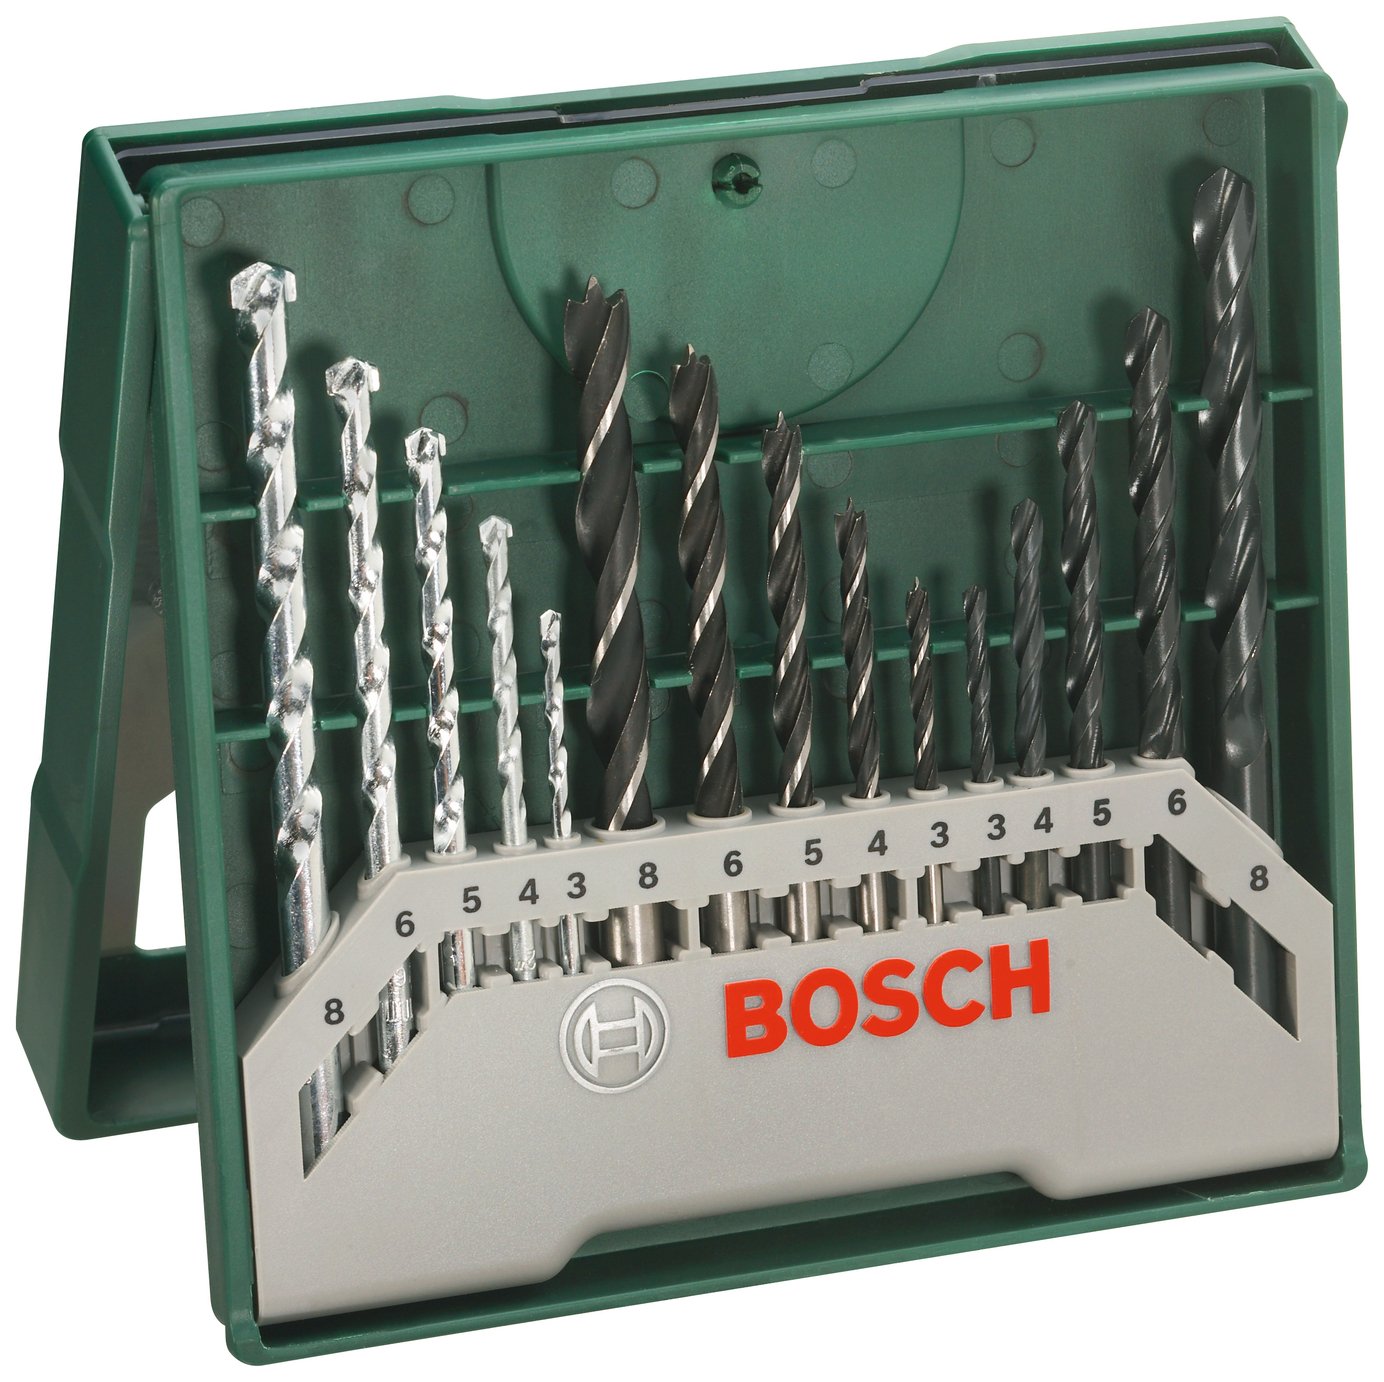 Bosch 15 Piece X-Line Drill Bit Set Review